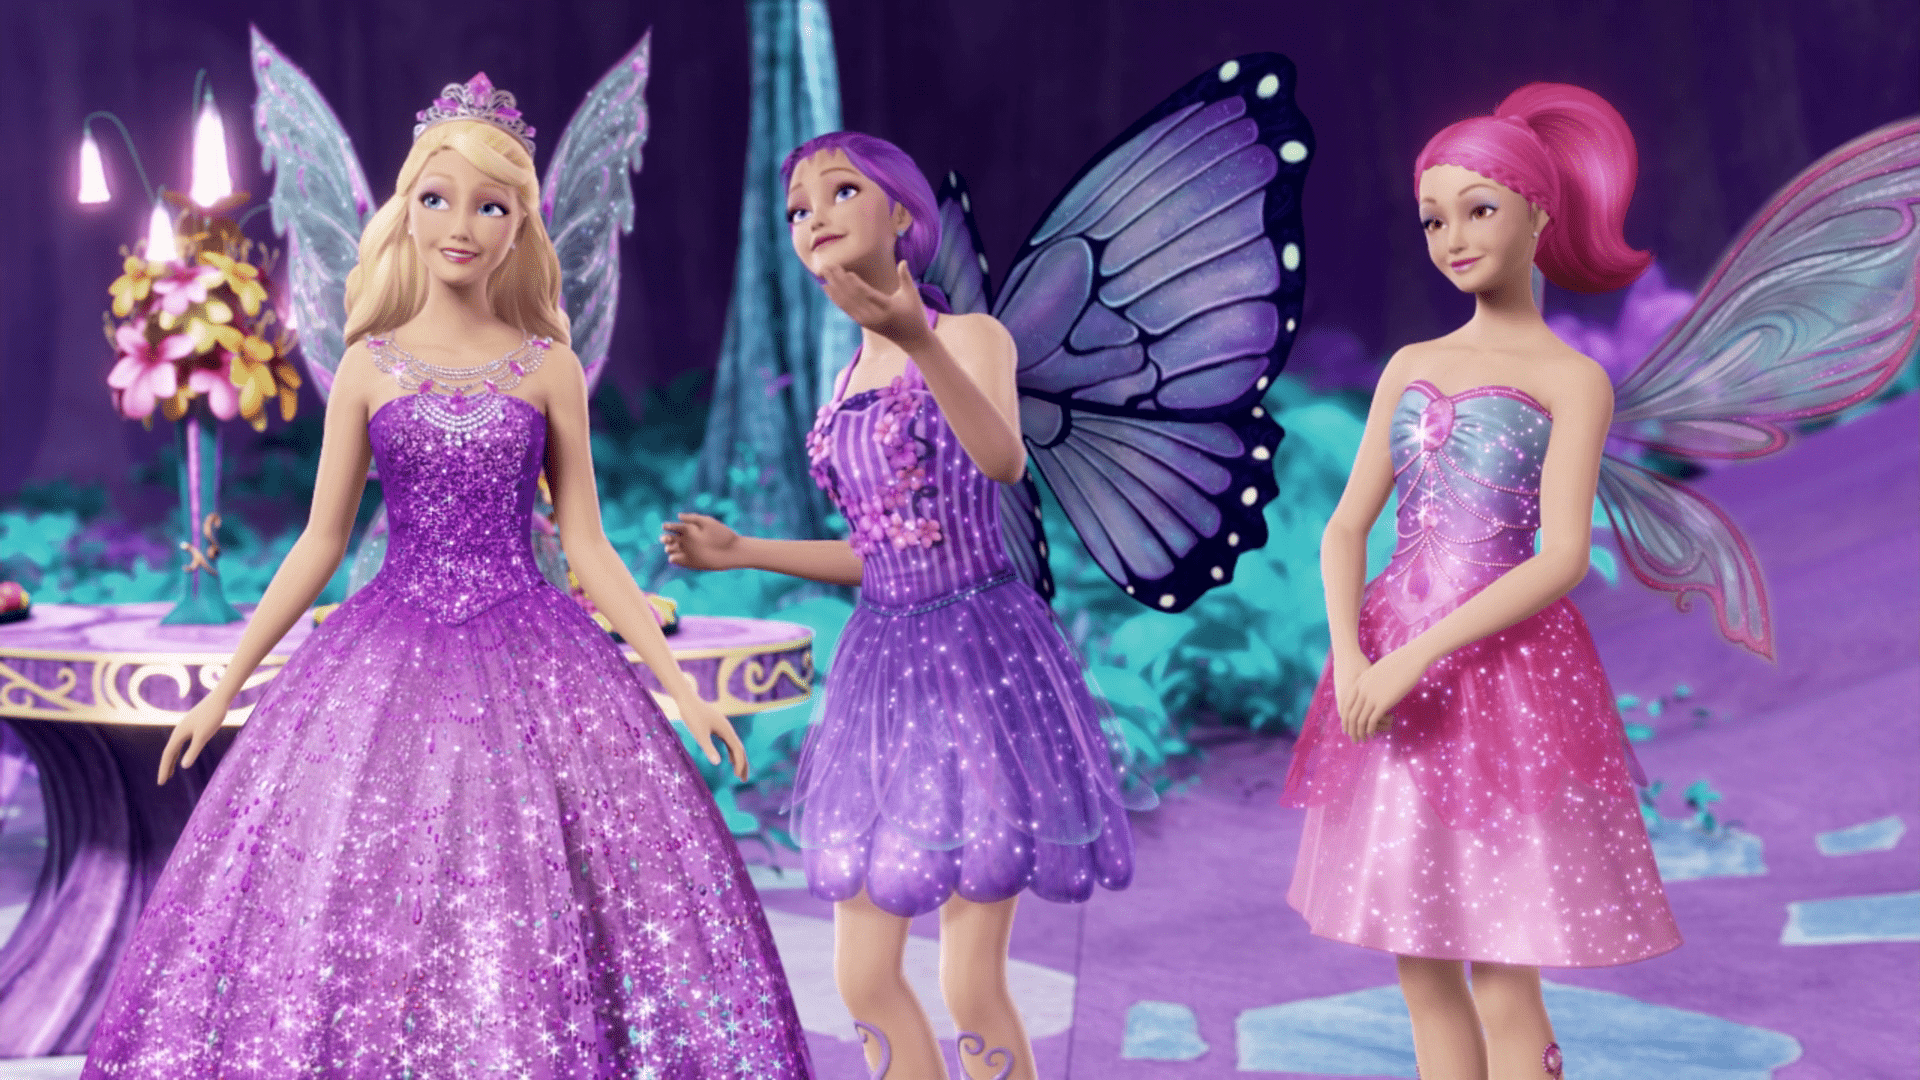 Wallpaper Dasktop Gambar Barbie 3d Image Num 31